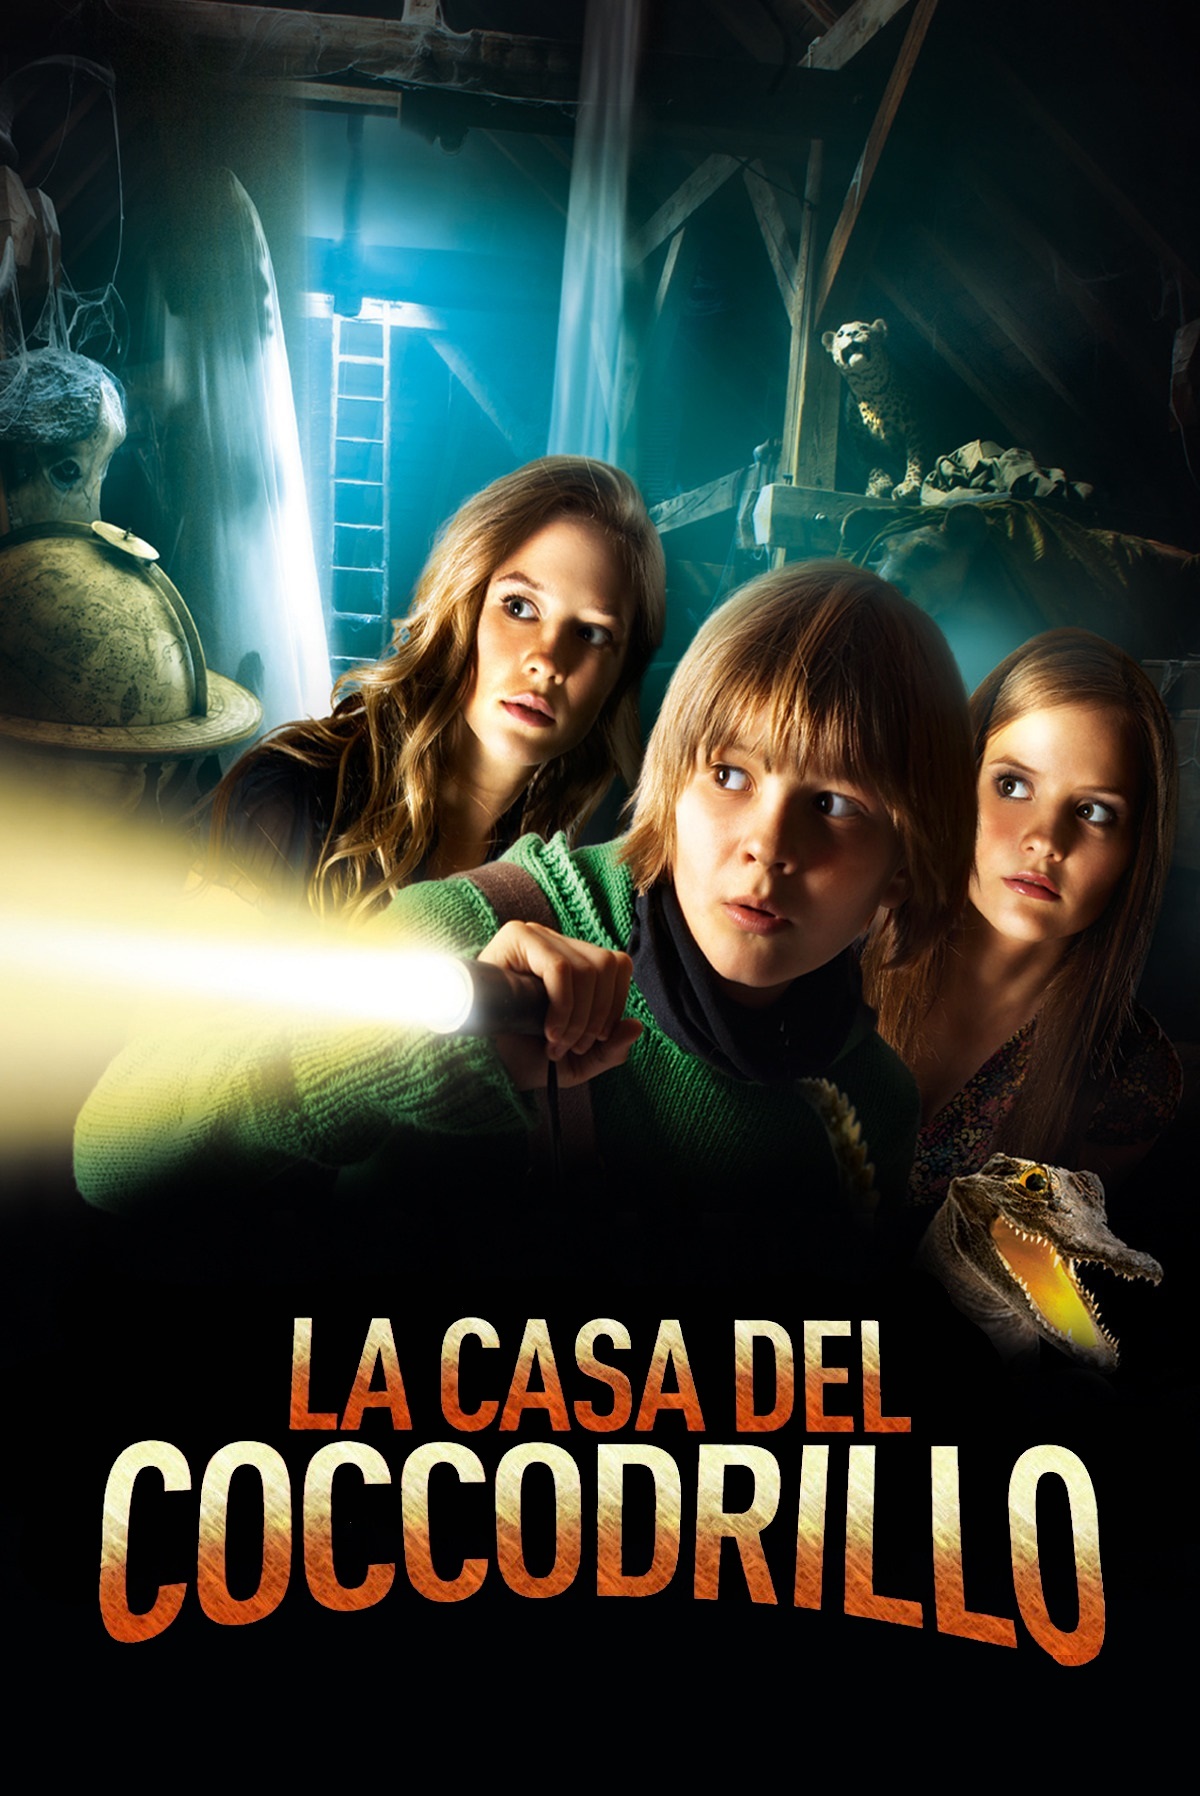 La casa del coccodrillo [HD] (2012)